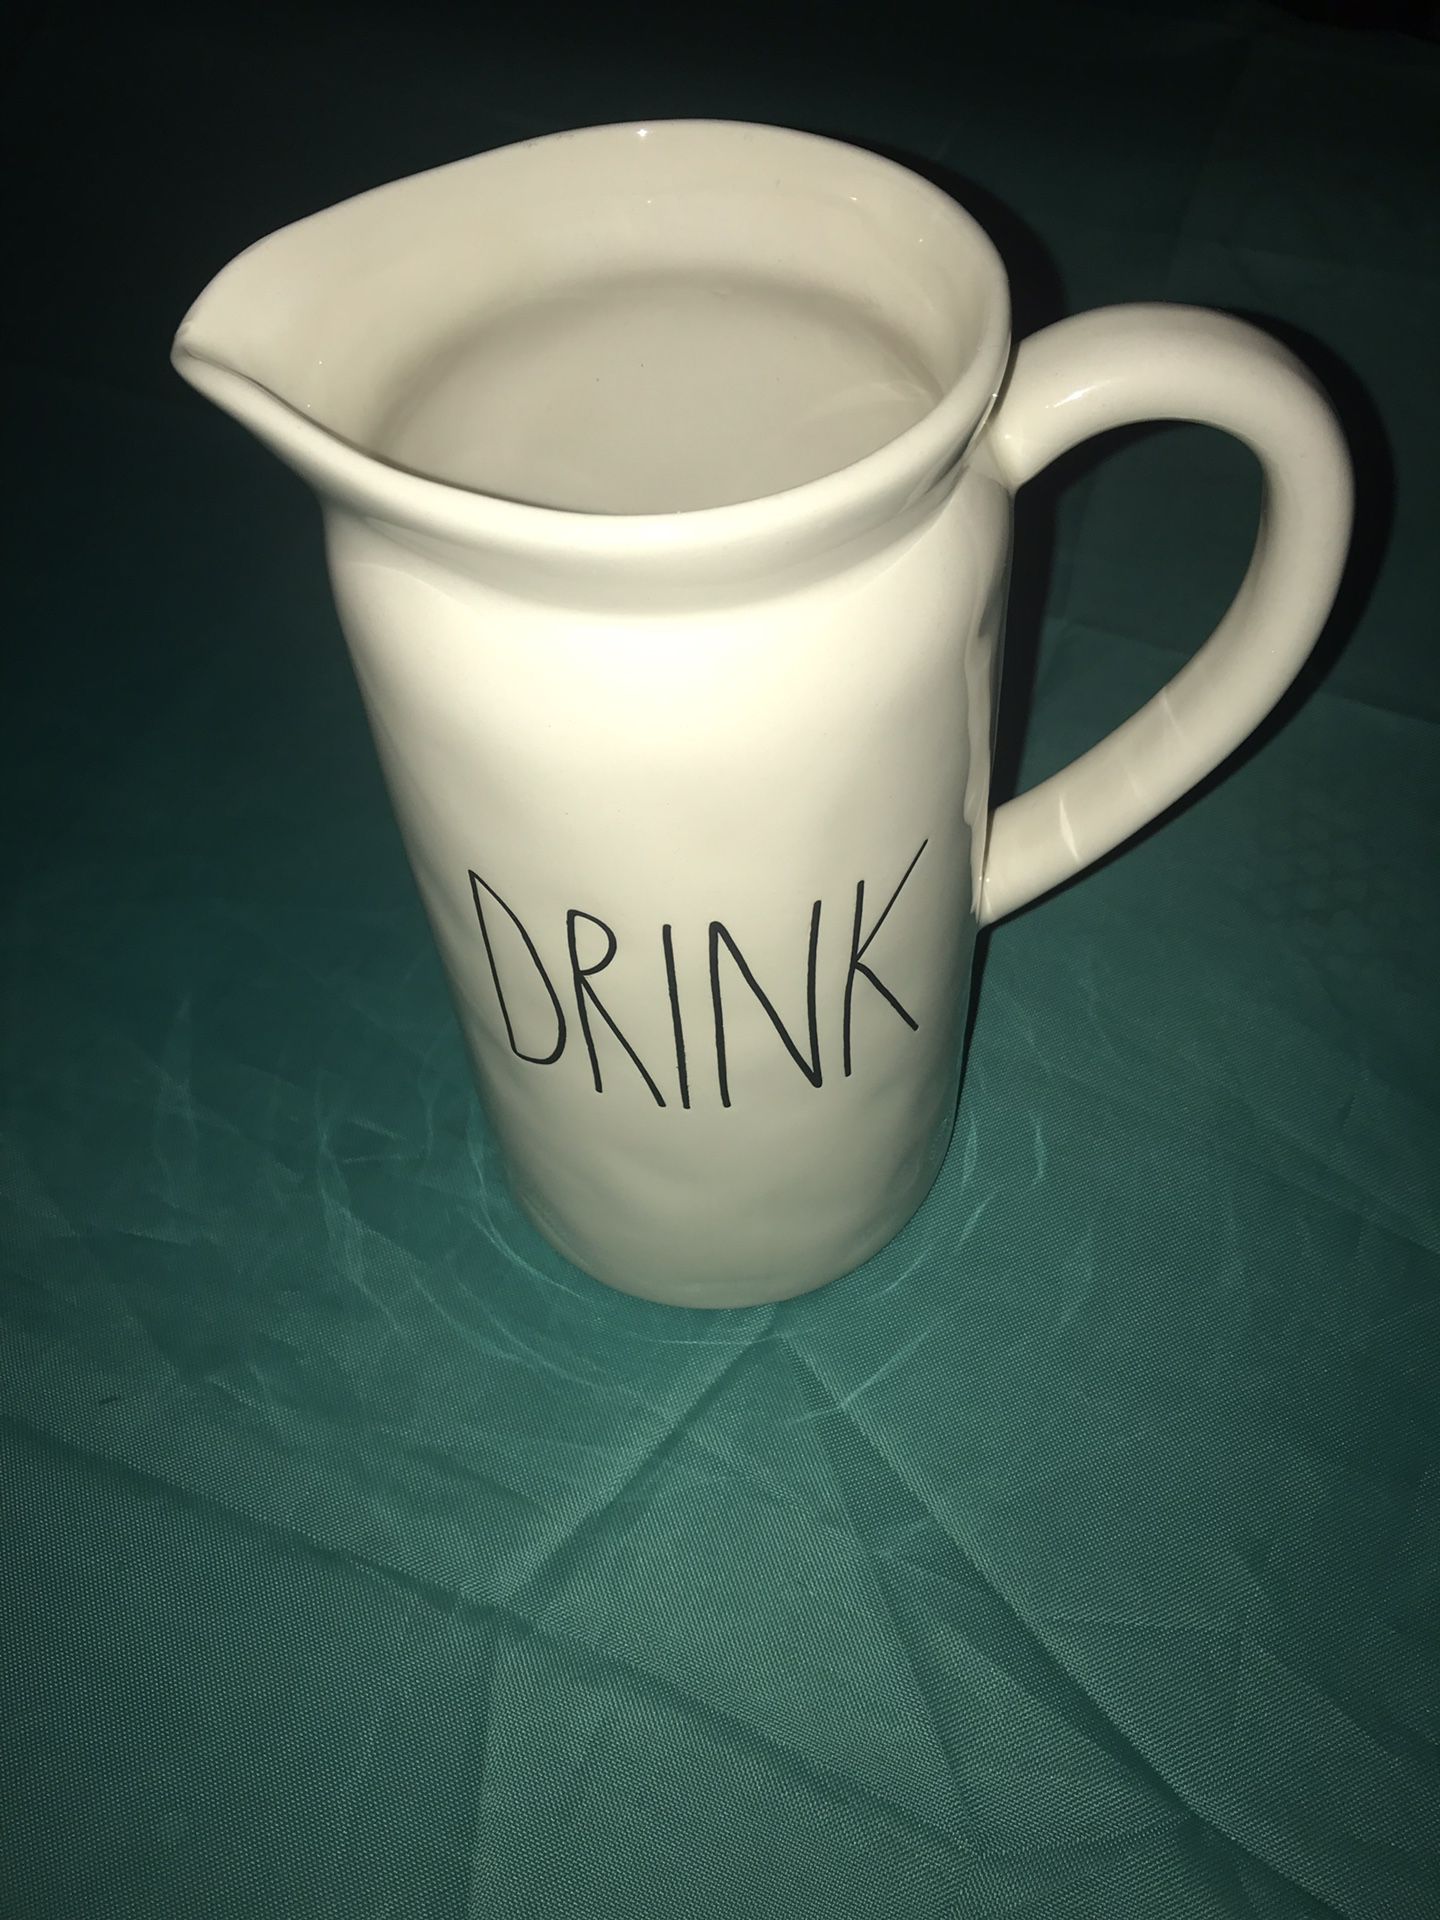 RAE DUNN “DRINK” pitcher